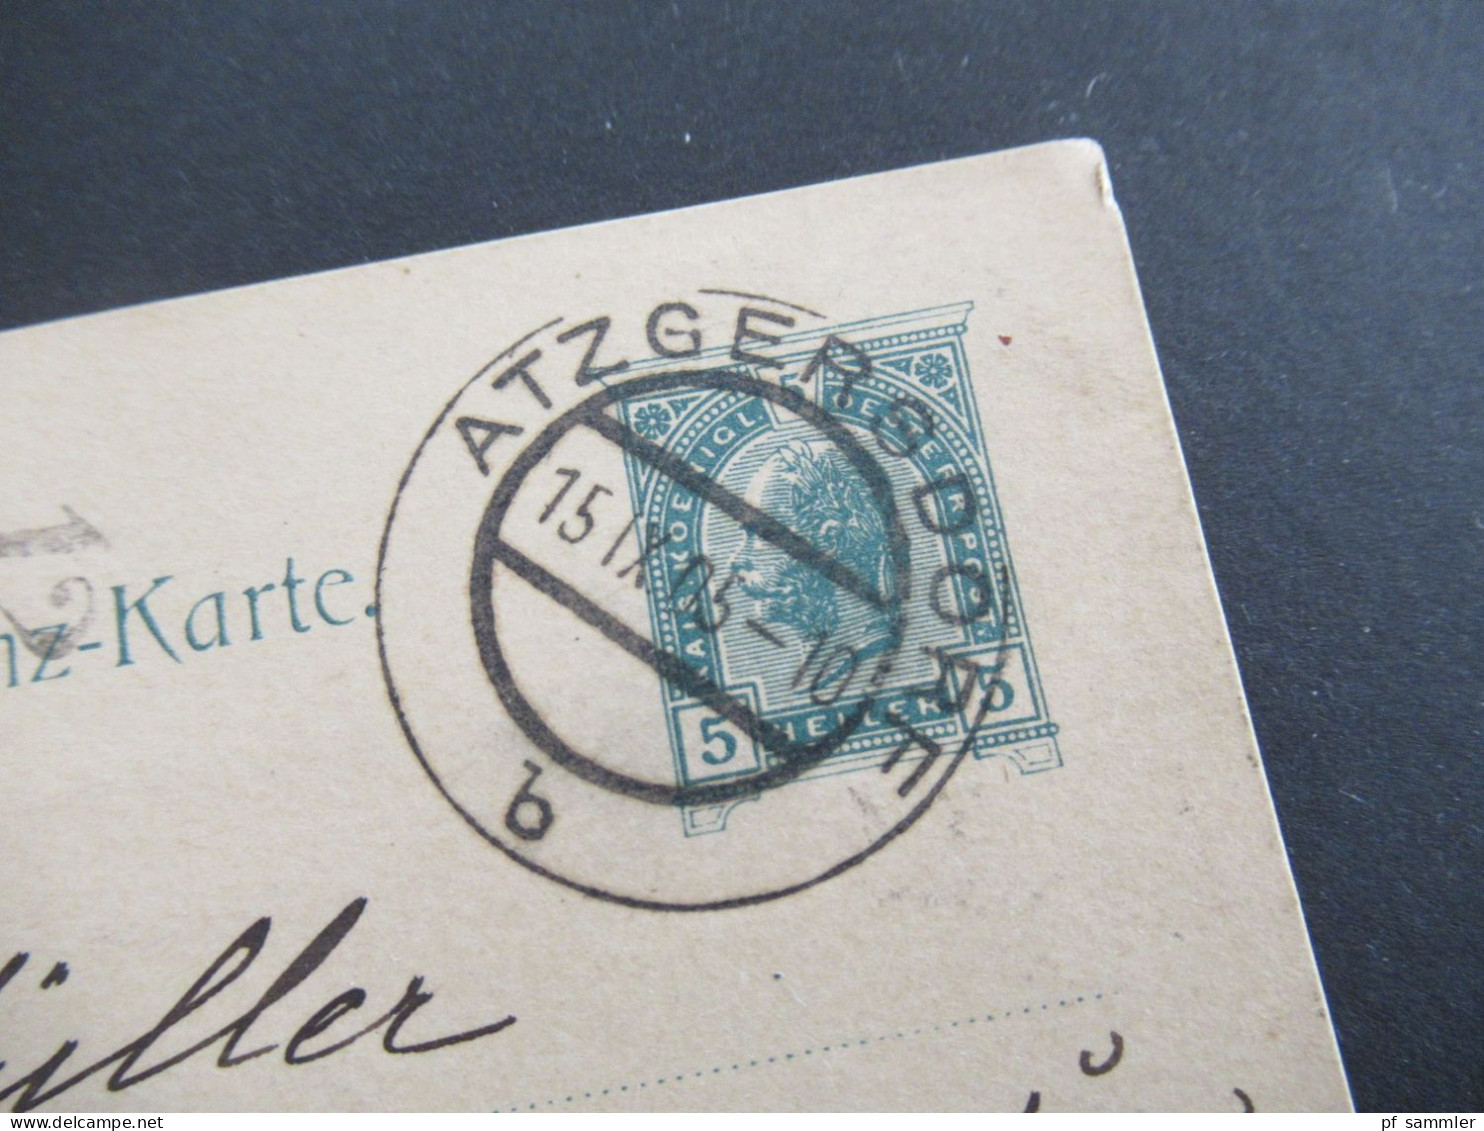 1905 Österreich Ganzsache 5 Heller Stempel Atzgersdorf An Die Königlich Württ. Militär Intendantur In Stuttgart - Cartes Postales